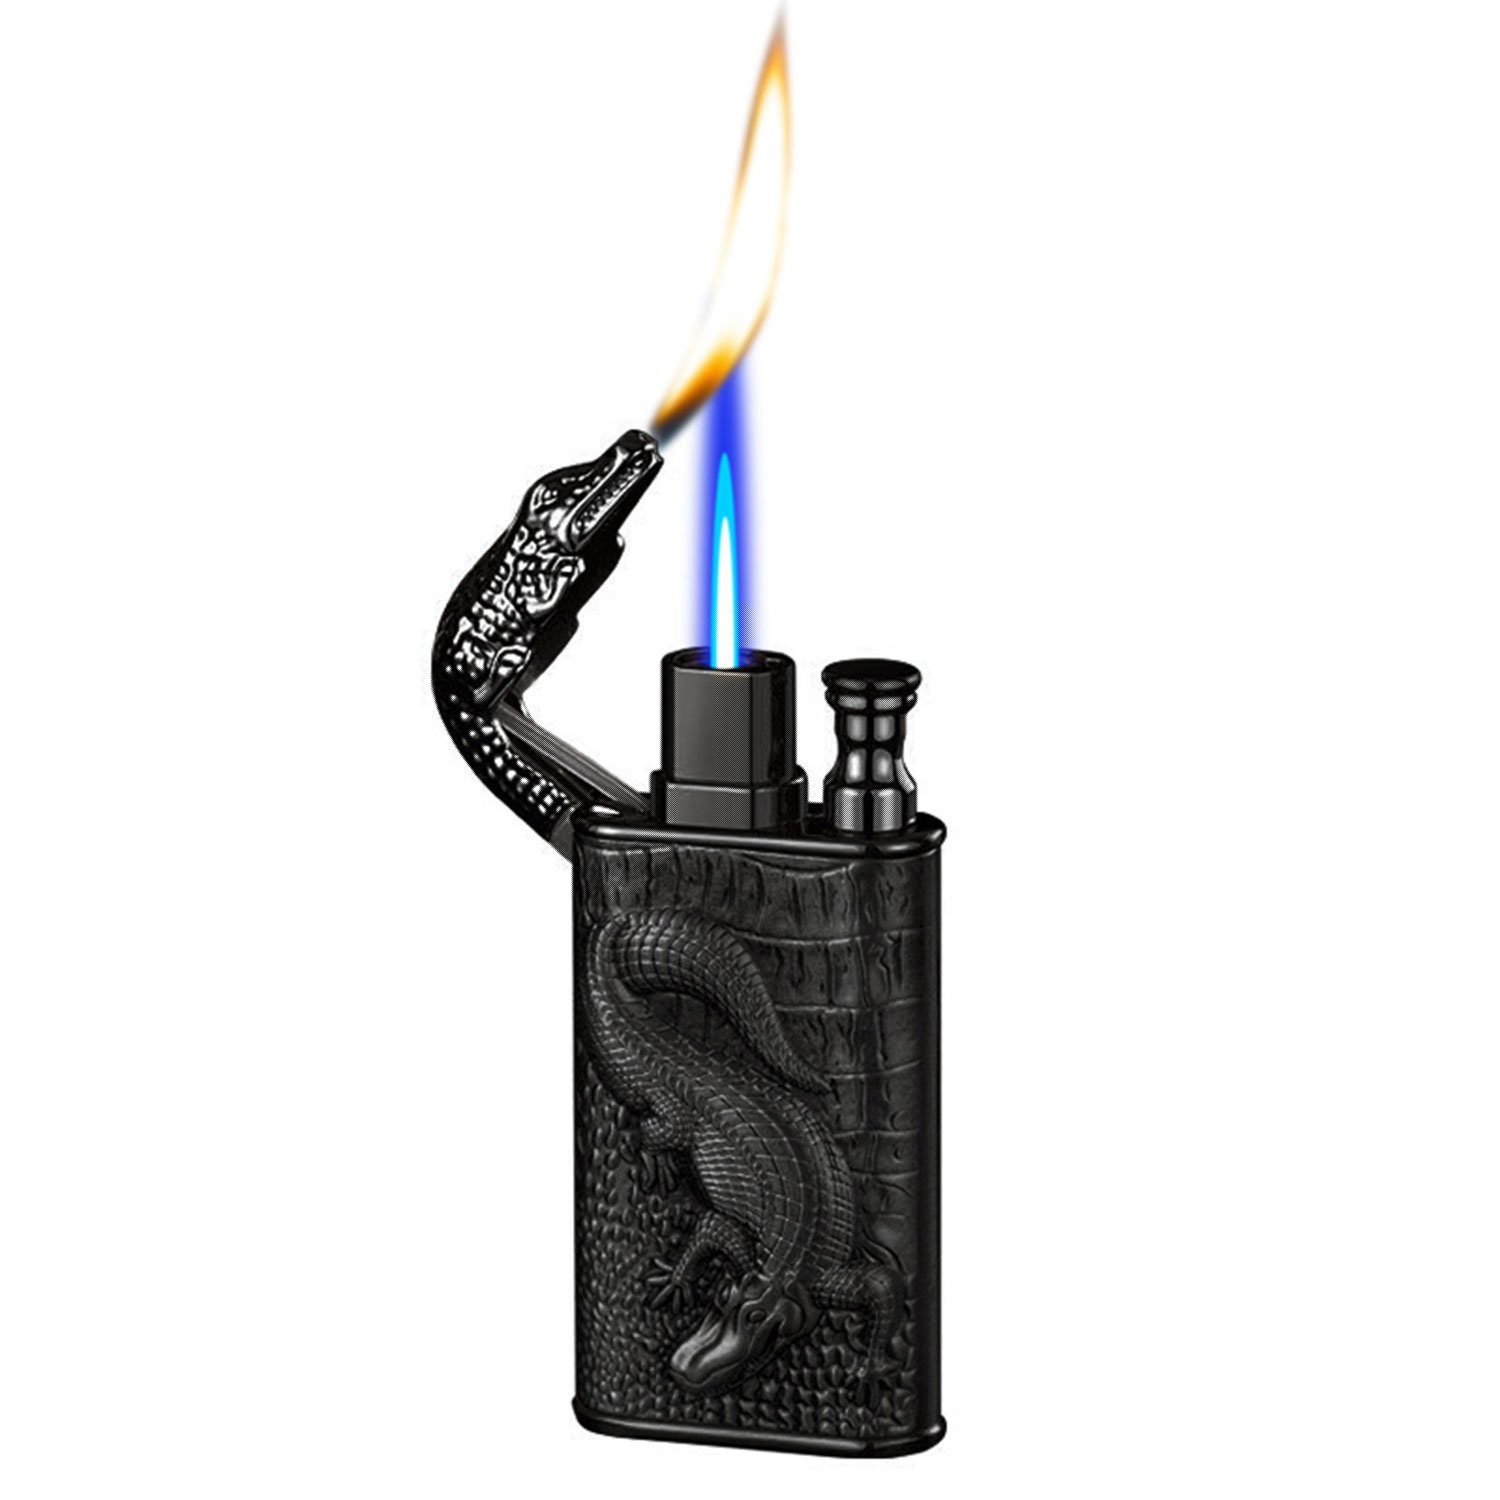 MAGICSHE Feuerzeug Winddicht Doppelflammenanzünder,Metallkörper, Einstellbare Flammengröße,Retro-Stil,Geschenke für Männer